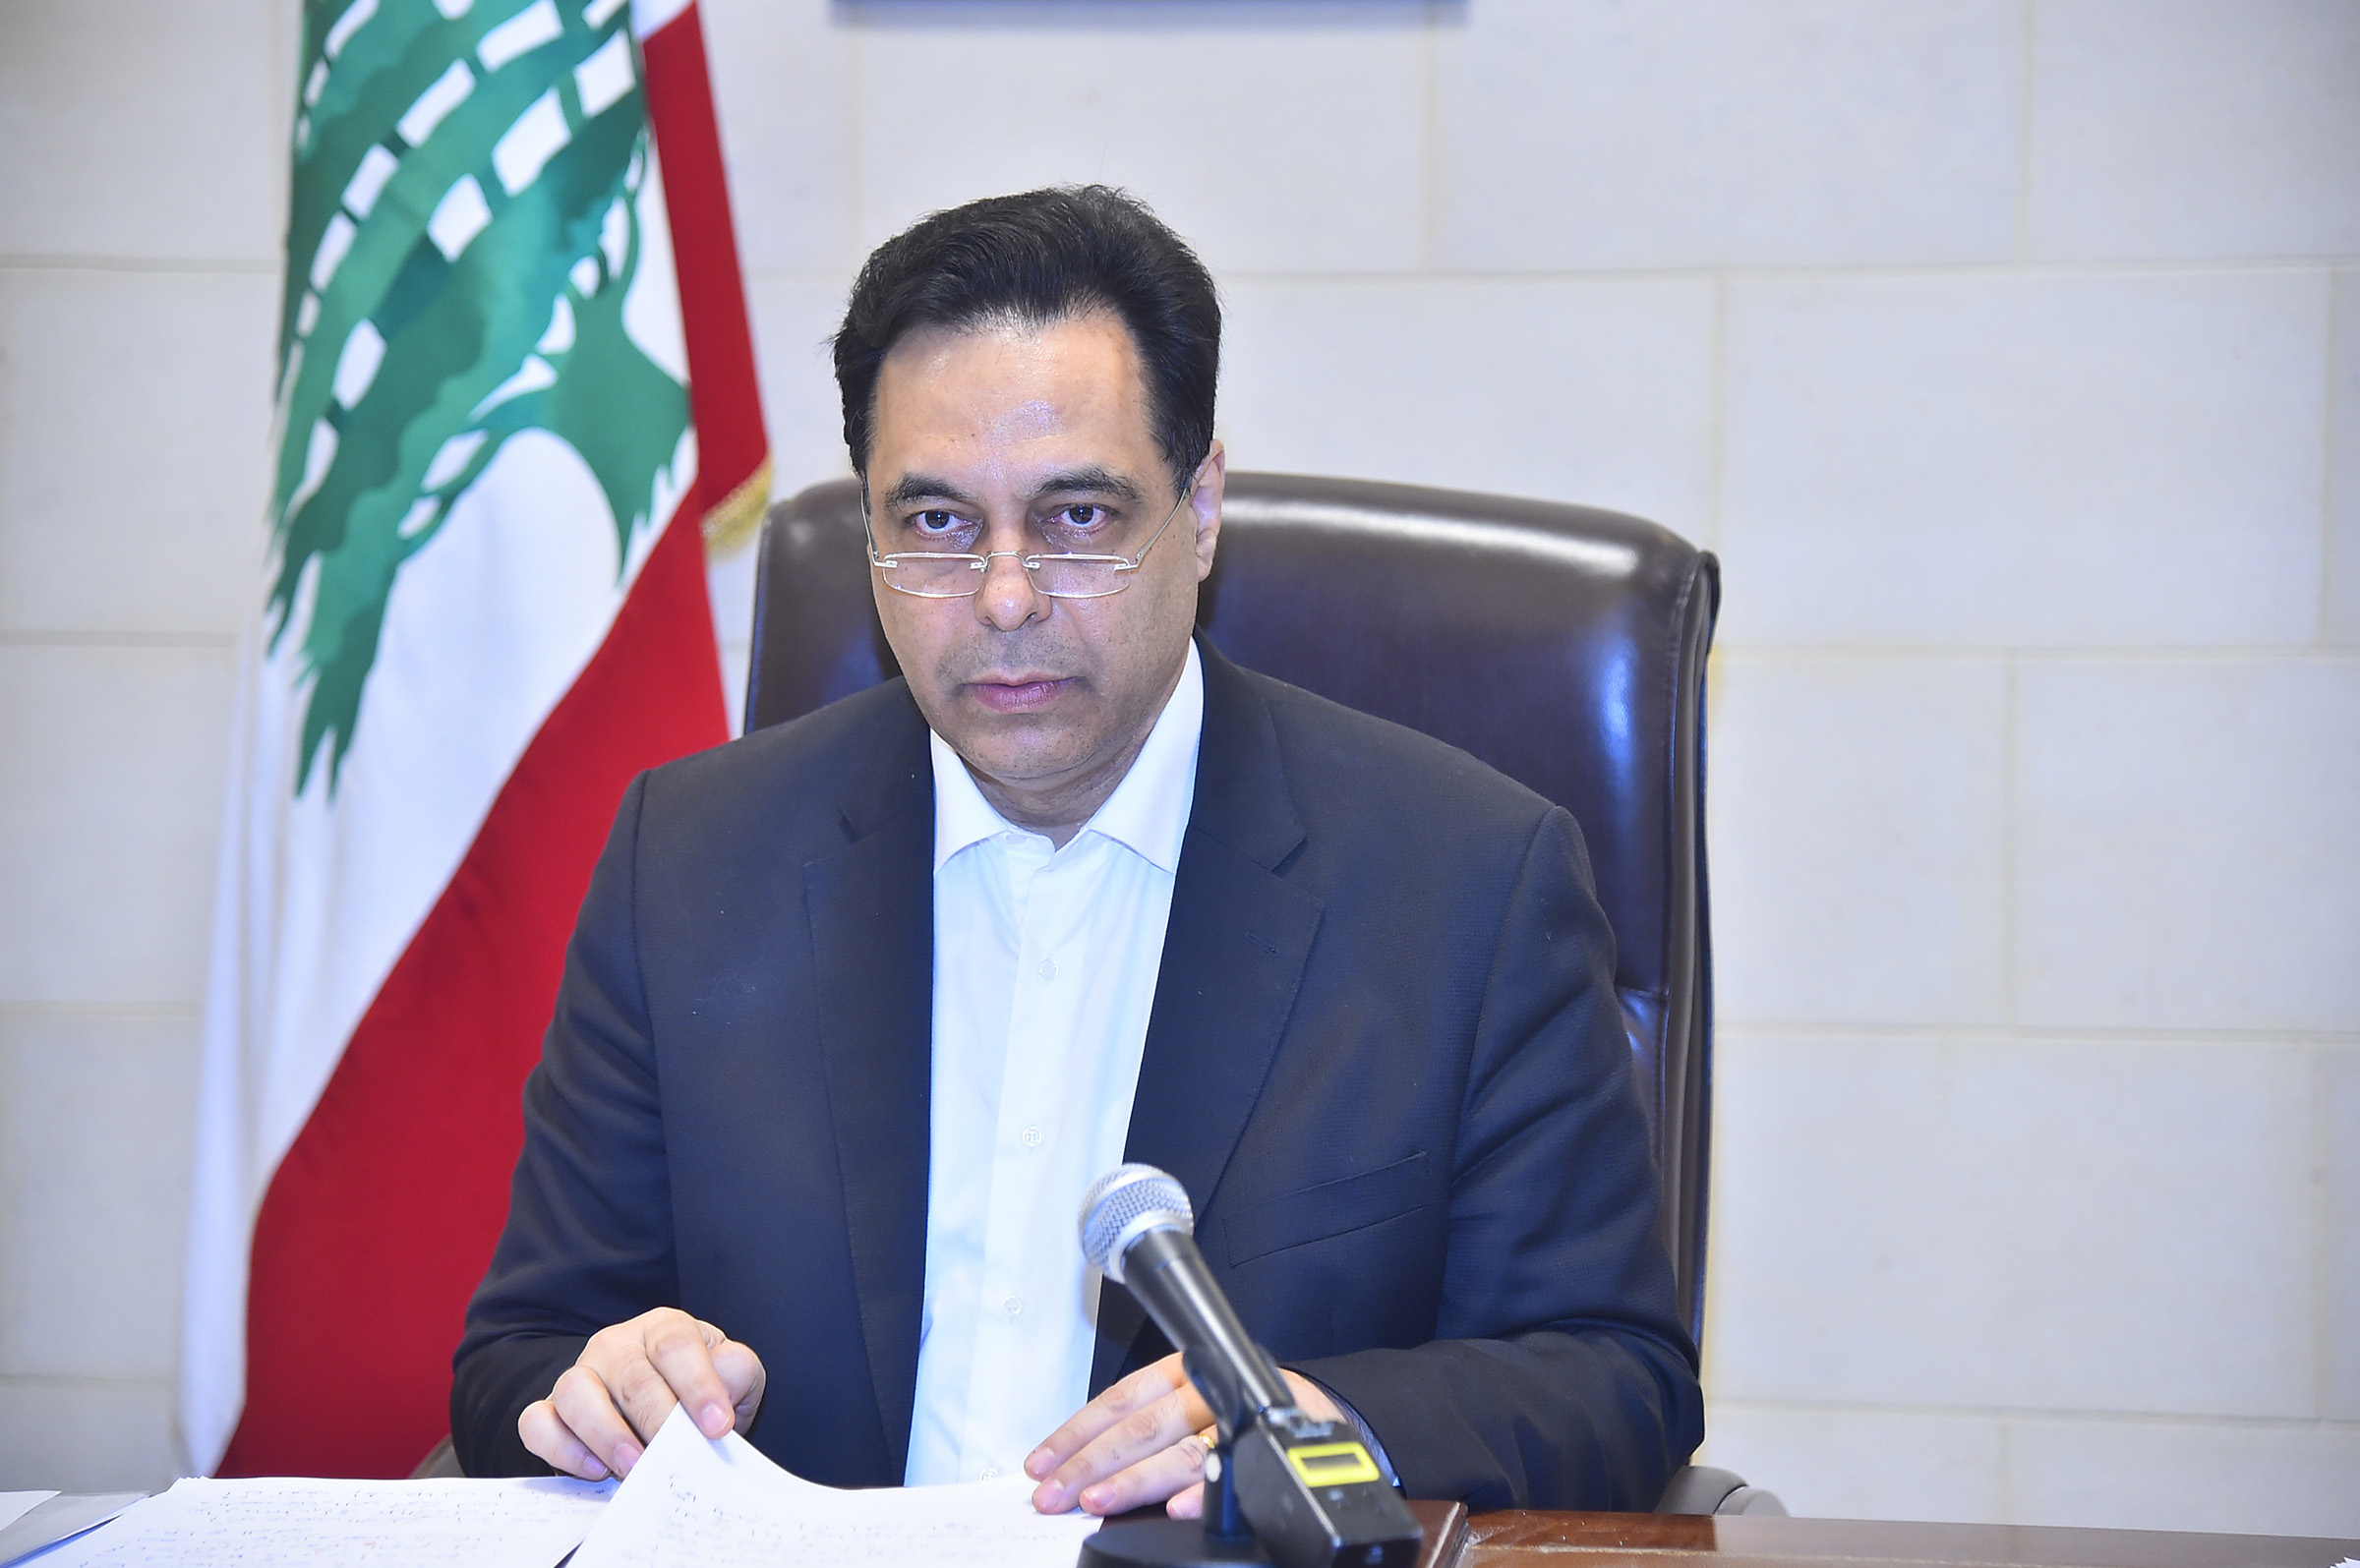 El primer ministro libanés, Hassan Diab, pronuncia un discurso sobre la explosión masiva en Beirut.